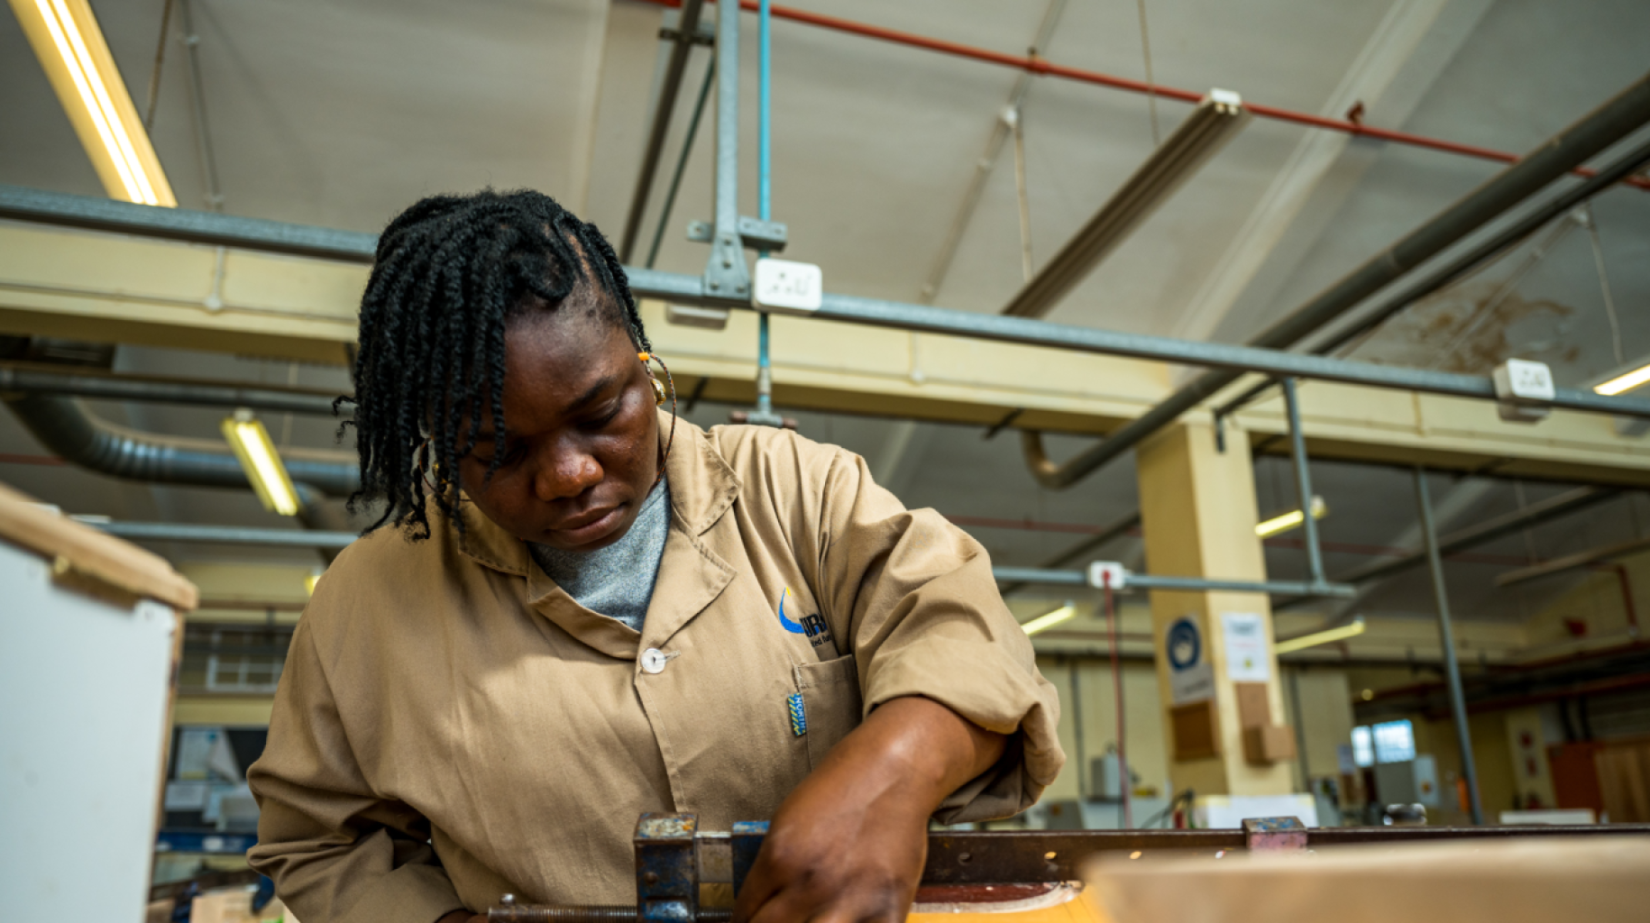 Imagen joven mujer con overoles beige trabaja en un taller de carpintería Pie de foto: El proyecto "Youth Rising", respaldado por la ONU en Liberia, está ayudando a impulsar el empleo juvenil y el emprendimiento como impulsores a largo plazo del desarrollo sostenible. 